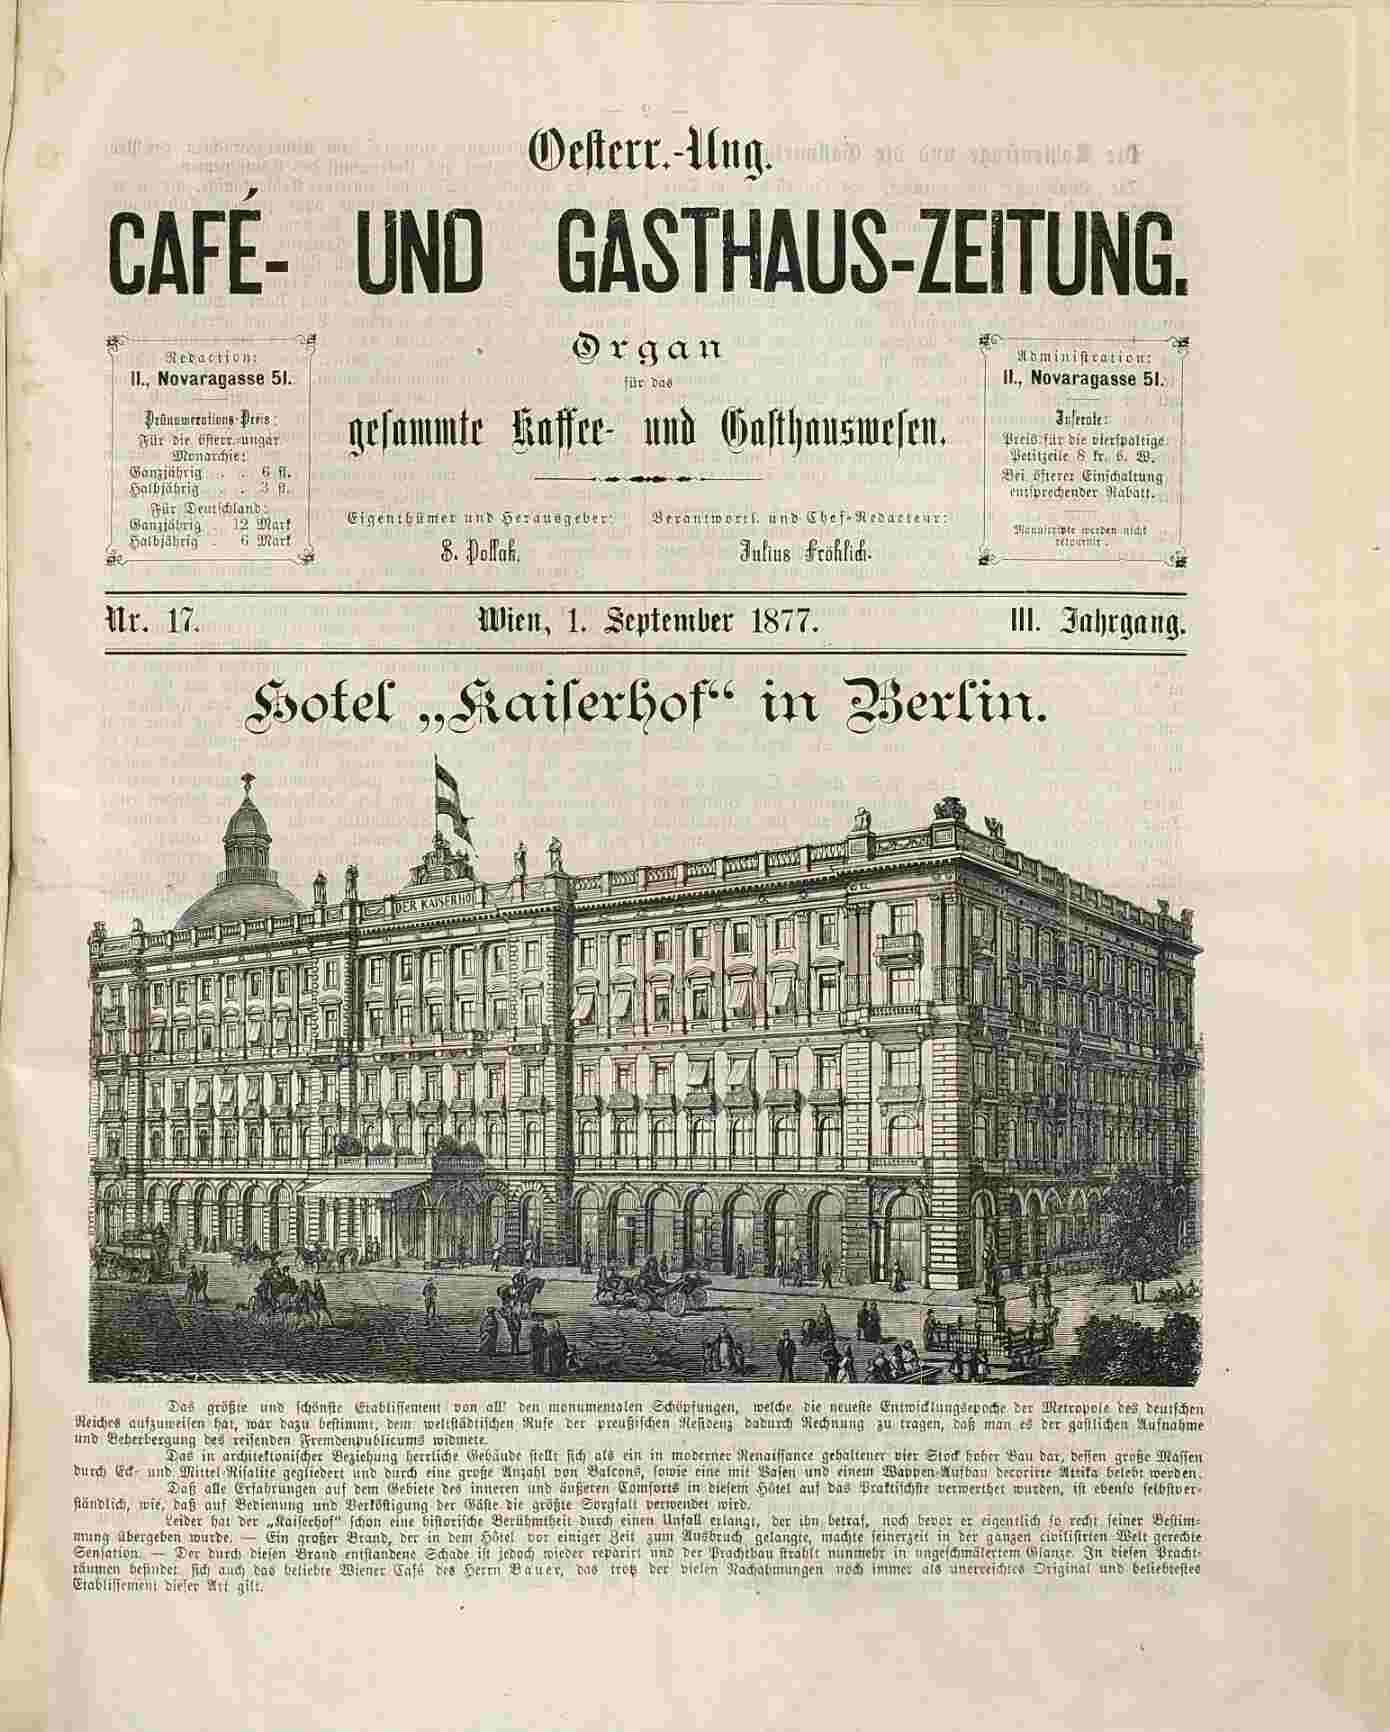 Österreichisch-ungarische Cafe- und Gasthaus-Zeitung, 1877, Heft 17, S.1, ANNO/ÖNB